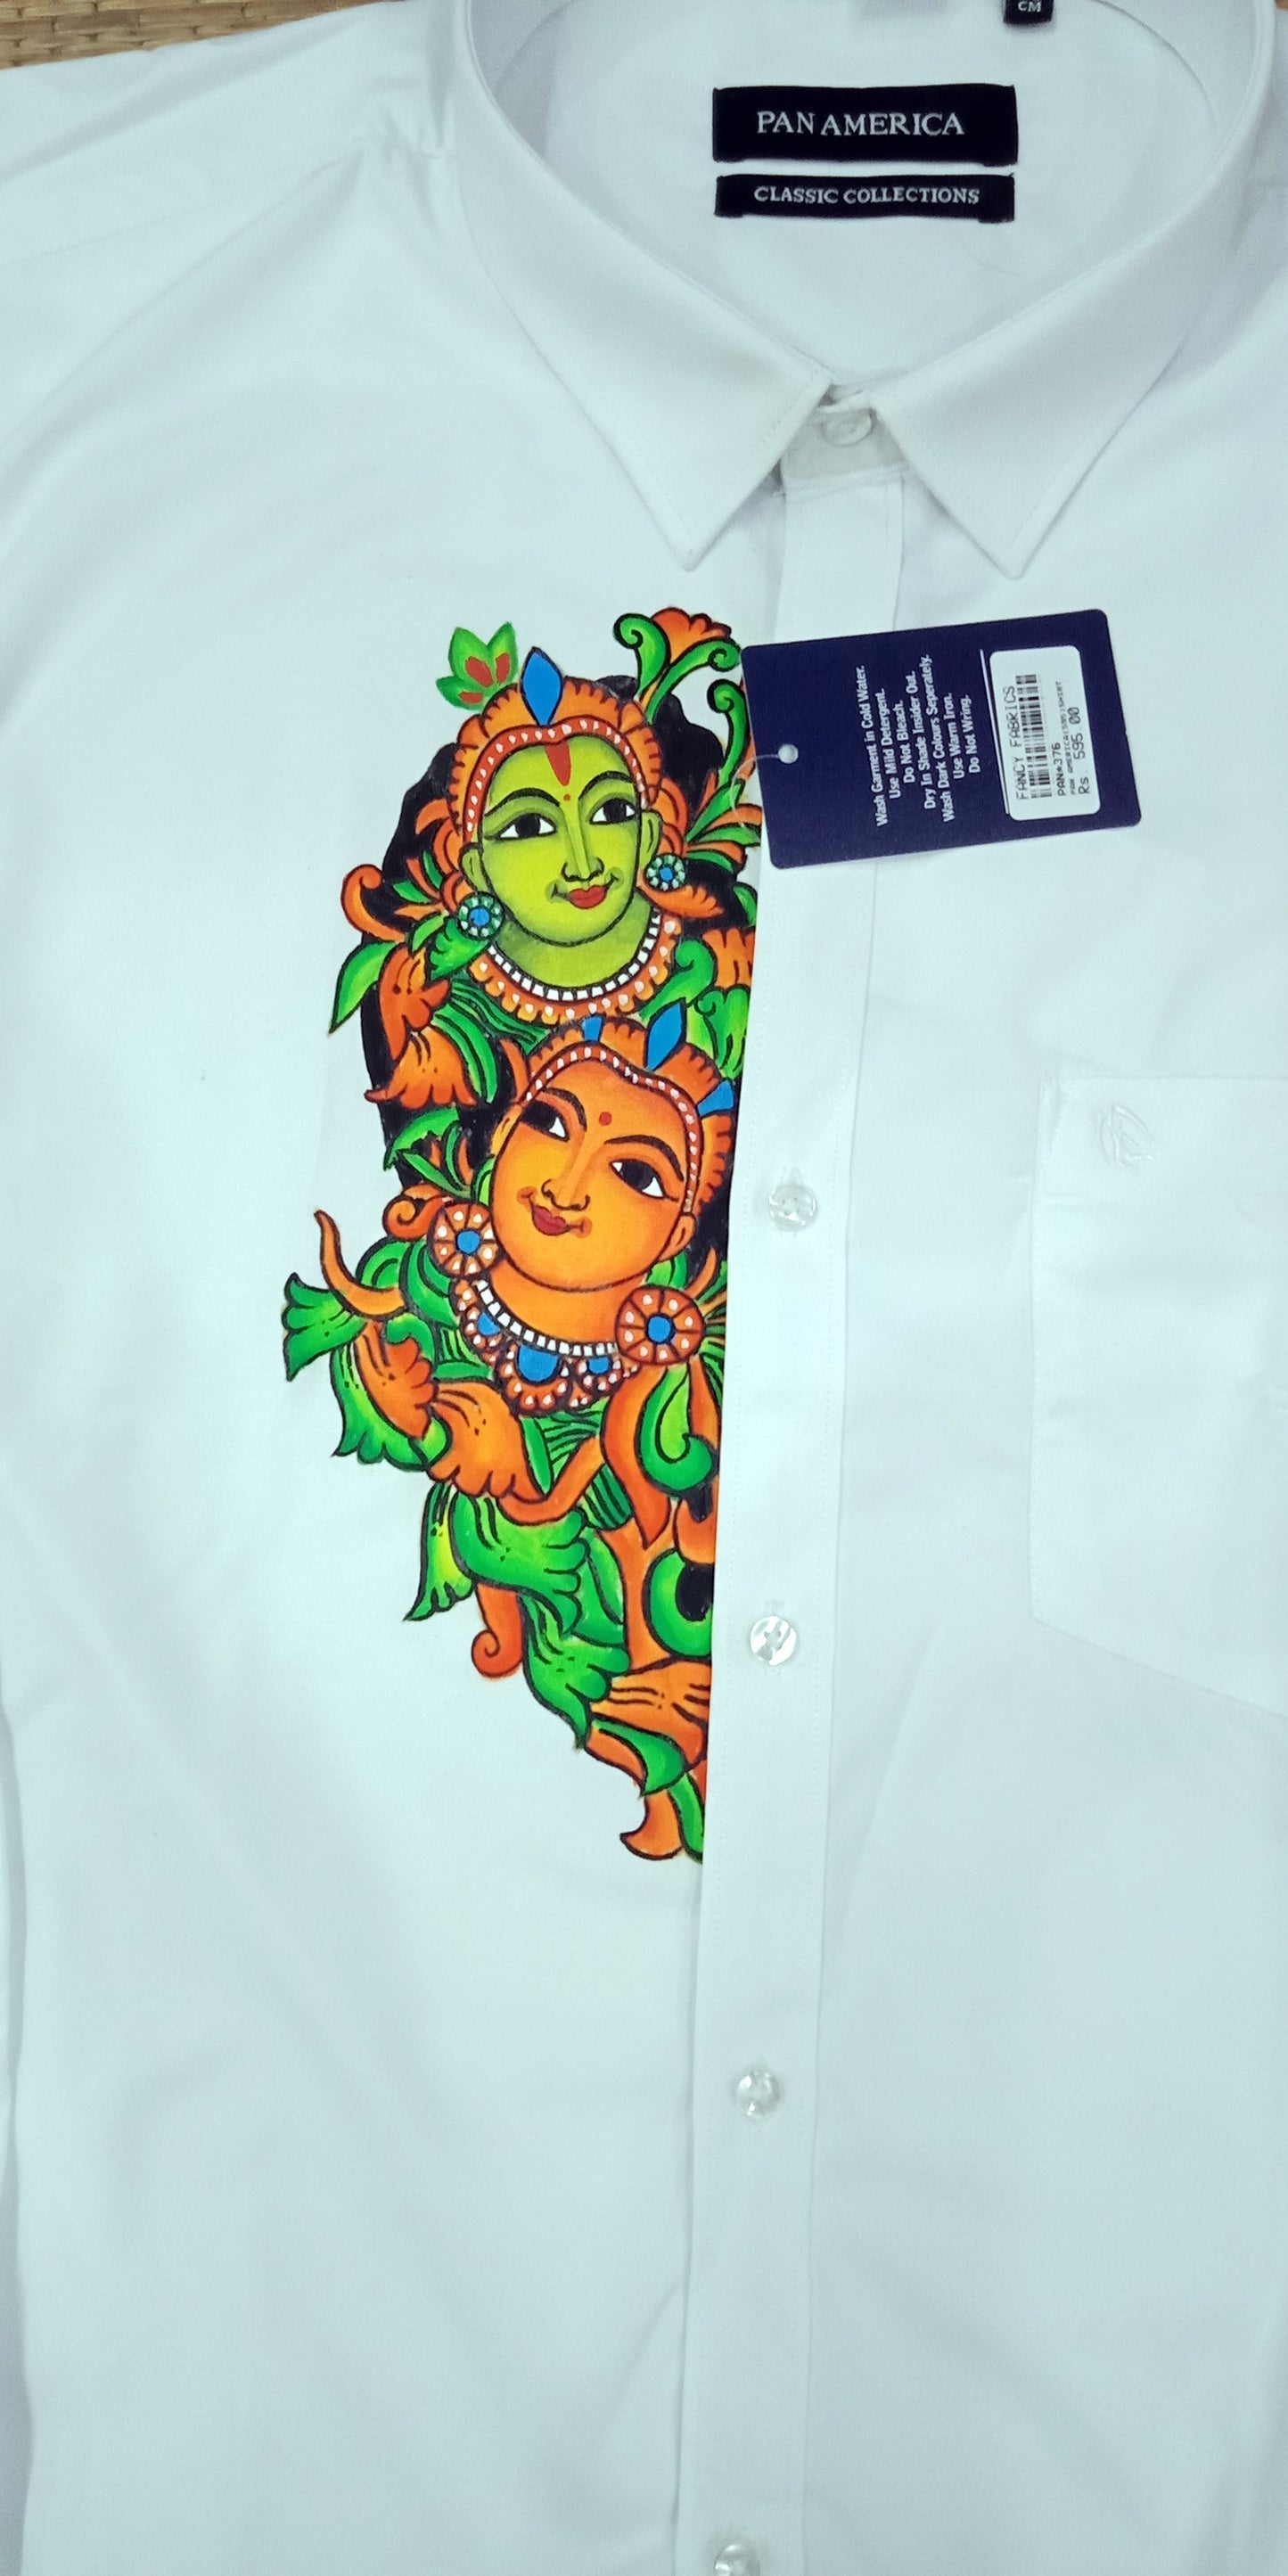 green krishna radha downwards hand mural painting on white shirt